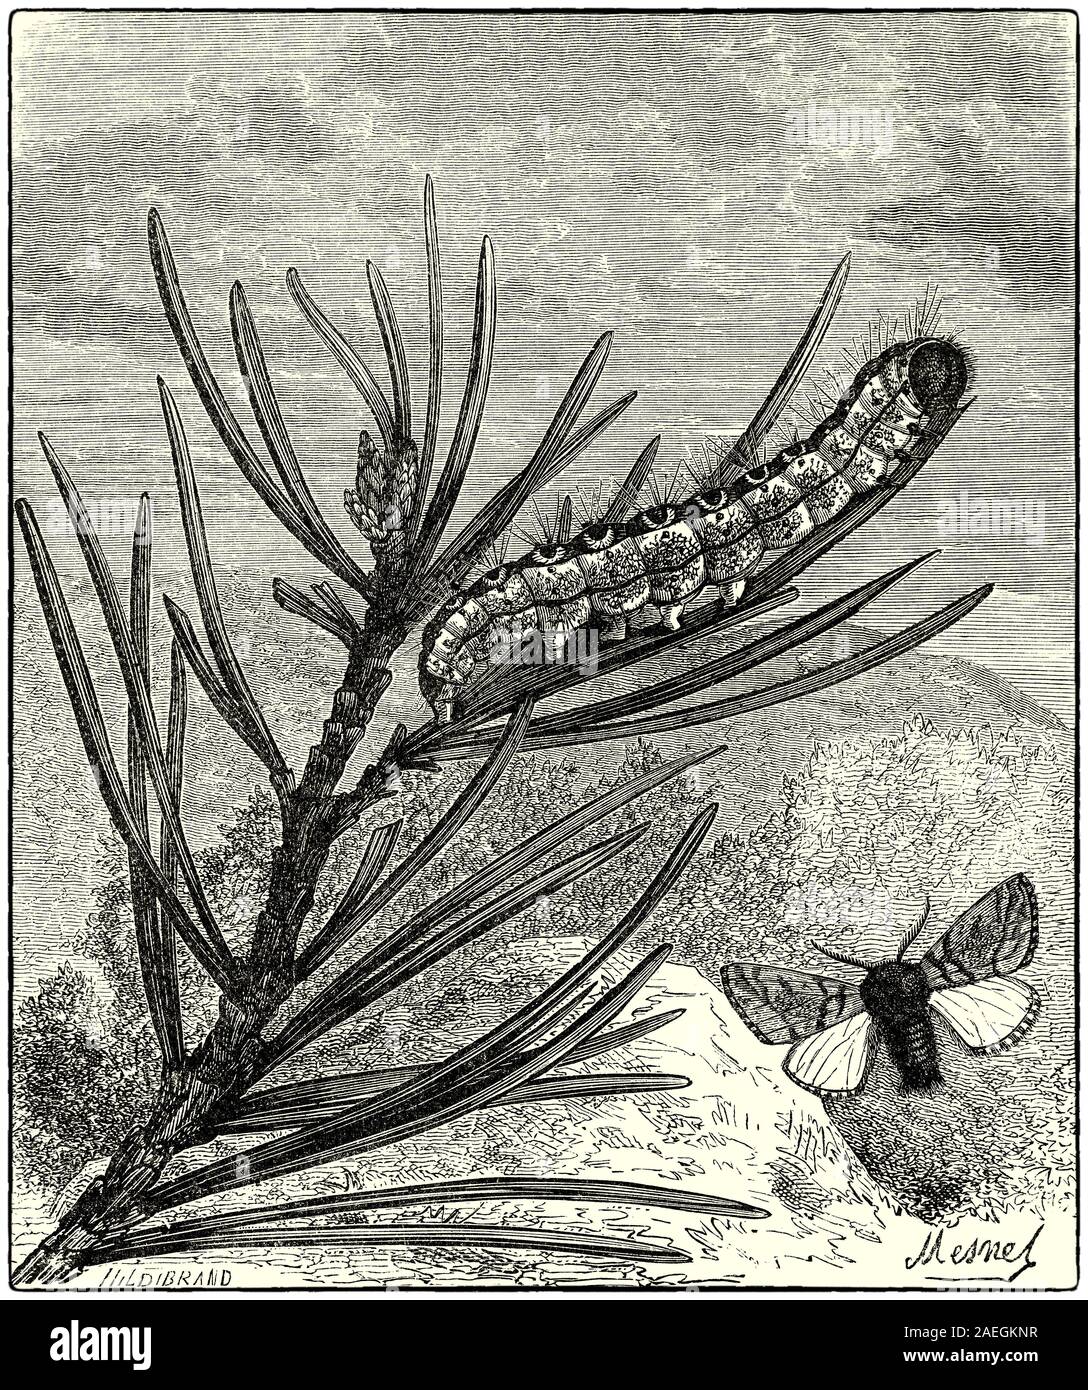 Bombyx du pin, un pin à Caterpillar et espèce de formulaire. La chenille processionnaire du pin, un lépidoptère de la famille Thaumetopoeidae est l'un des plus destructeurs d'espèces de pins et de cèdres de l'Asie centrale, Afrique du Nord et les pays du sud de l'Europe. Le urticating poils de la chenille larves causent des réactions néfastes chez les humains et autres mammifères. L'espèce est remarquable pour le comportement de ses chenilles, qui hivernent dans la tente-comme des nids de pins, et qui se déroulent à travers les bois dans les colonnes, protégés par leurs poils très irritant. Banque D'Images